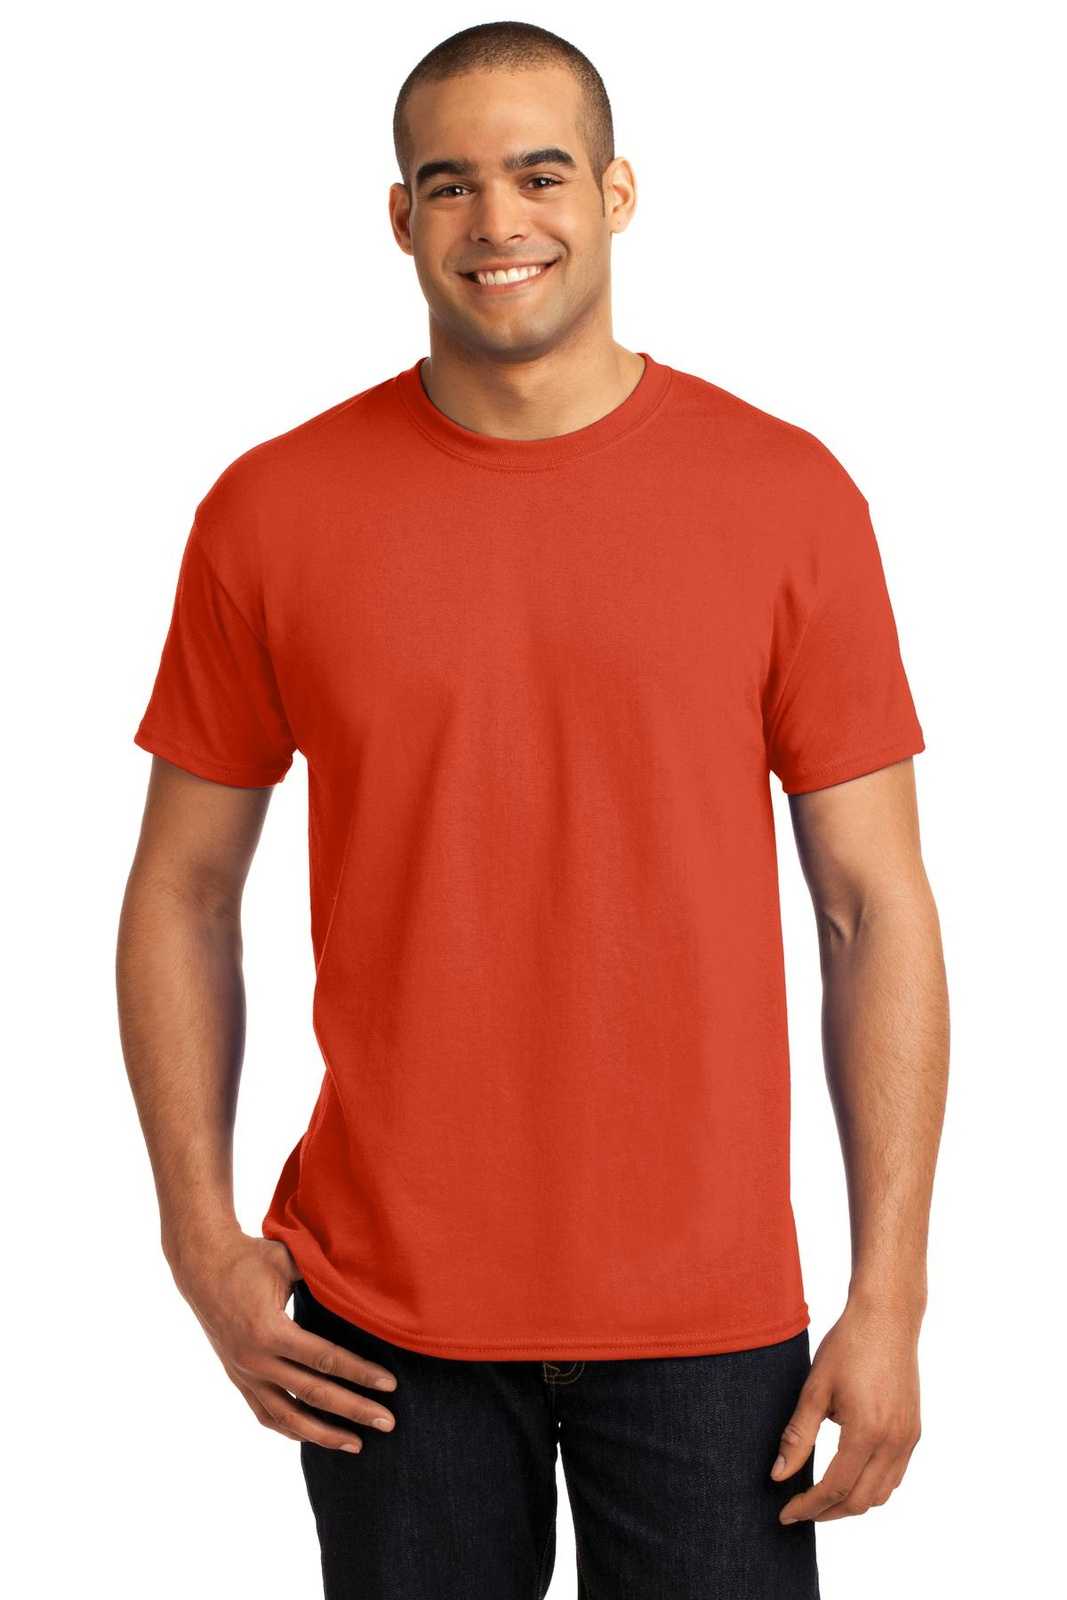 Hanes 5170 Ecosmart 50/50 Cotton/Poly T-Shirt - Orange - HIT a Double